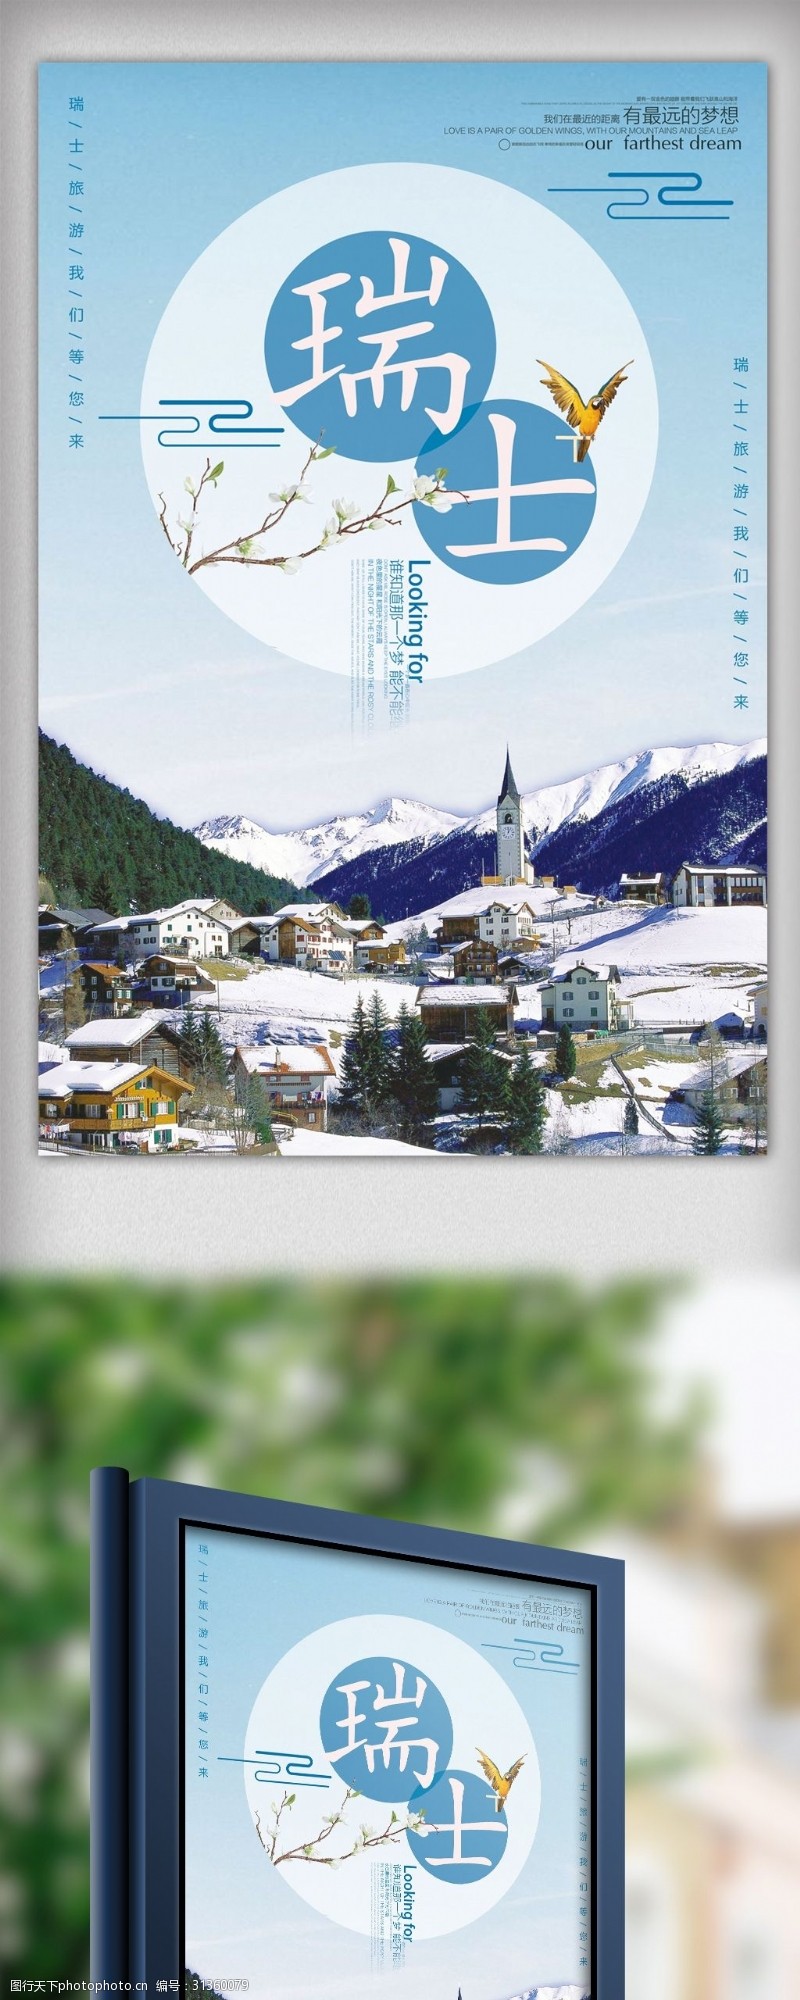 瑞士旅游景点大气简约瑞士旅游宣传海报